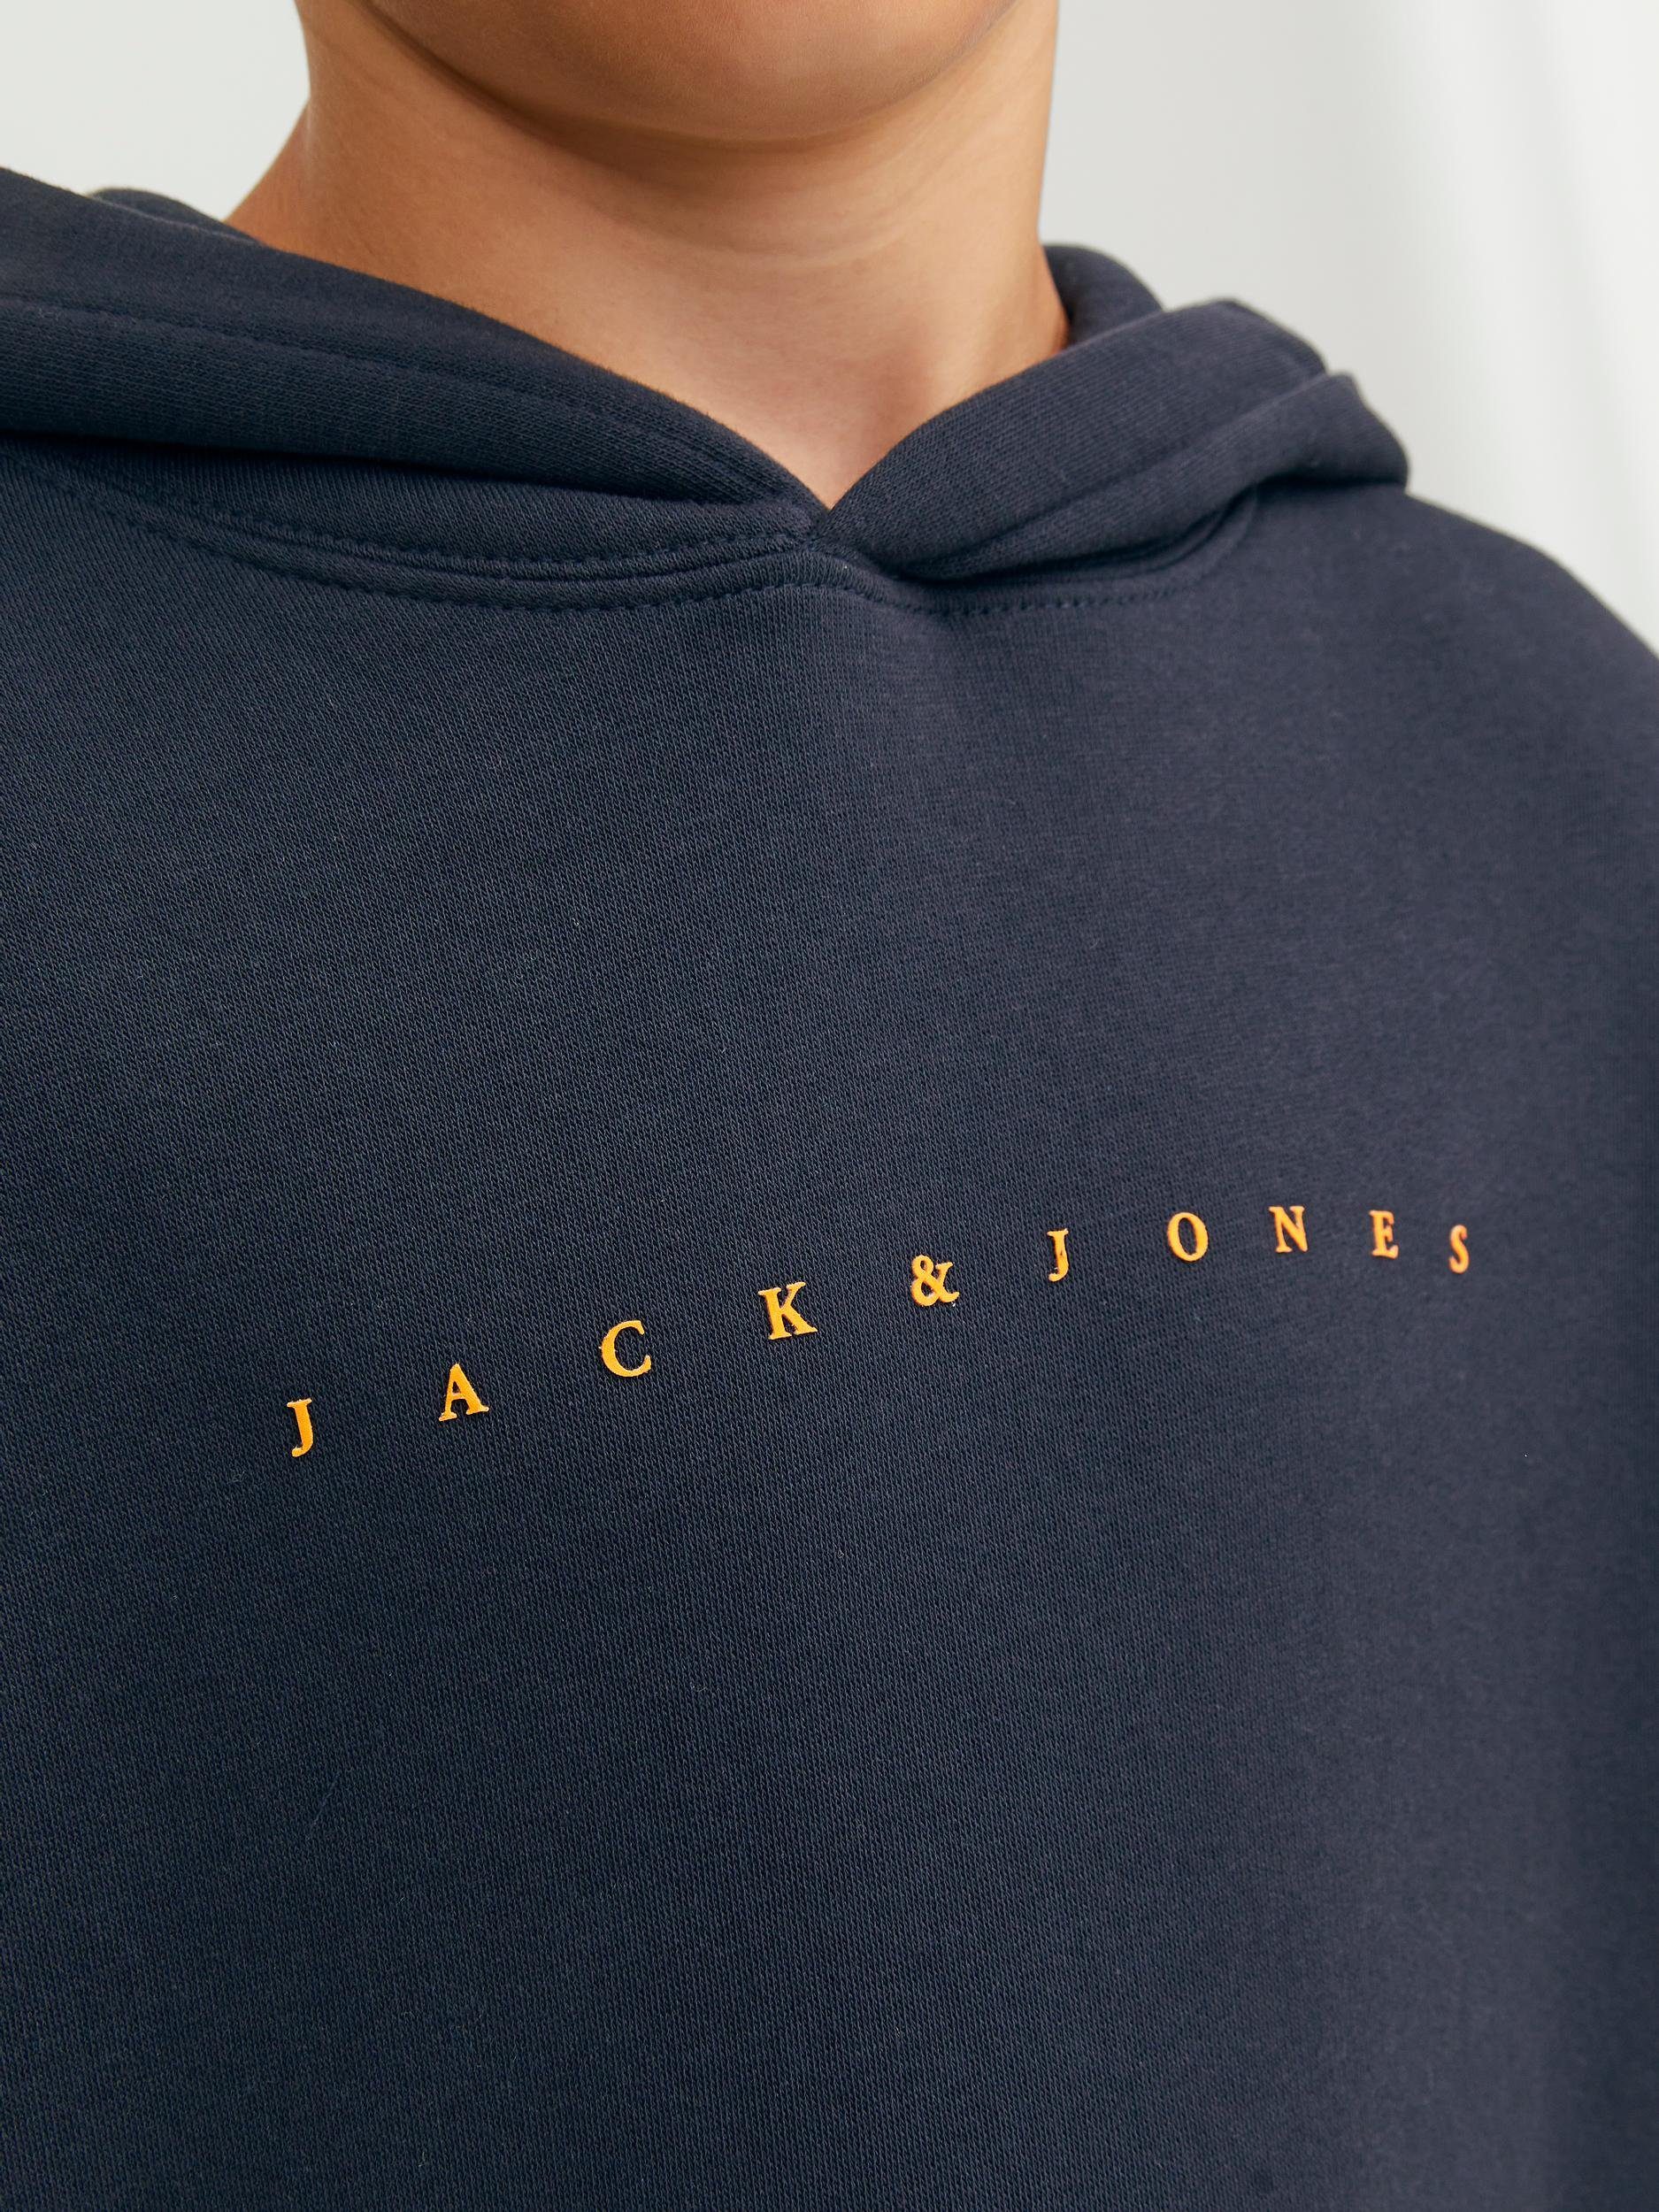 Jack Dark Sweatshirt Navy/LOOSE & Jones